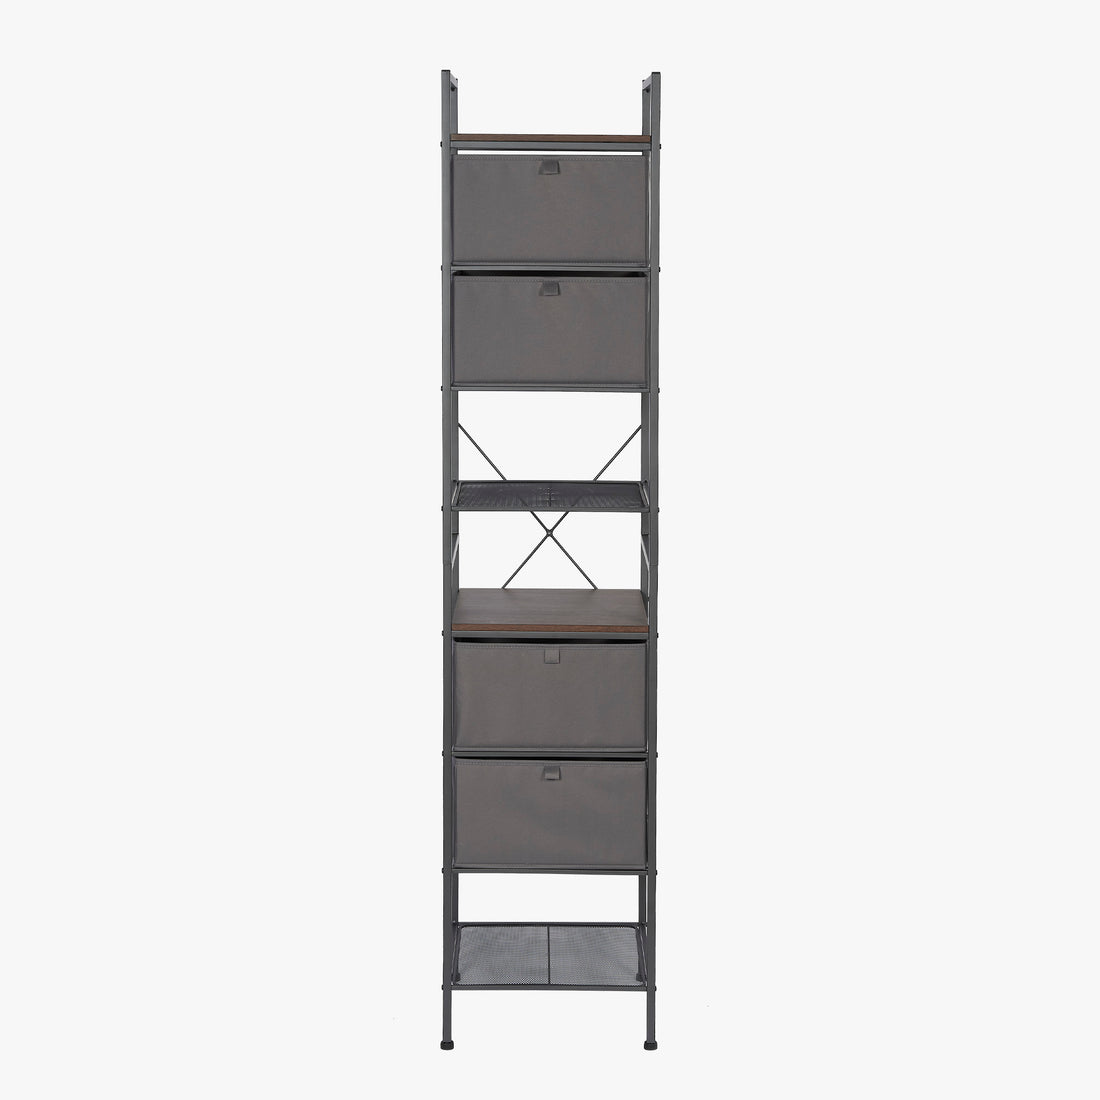 Tour de placard empilable à 4 niveaux avec tiroirs